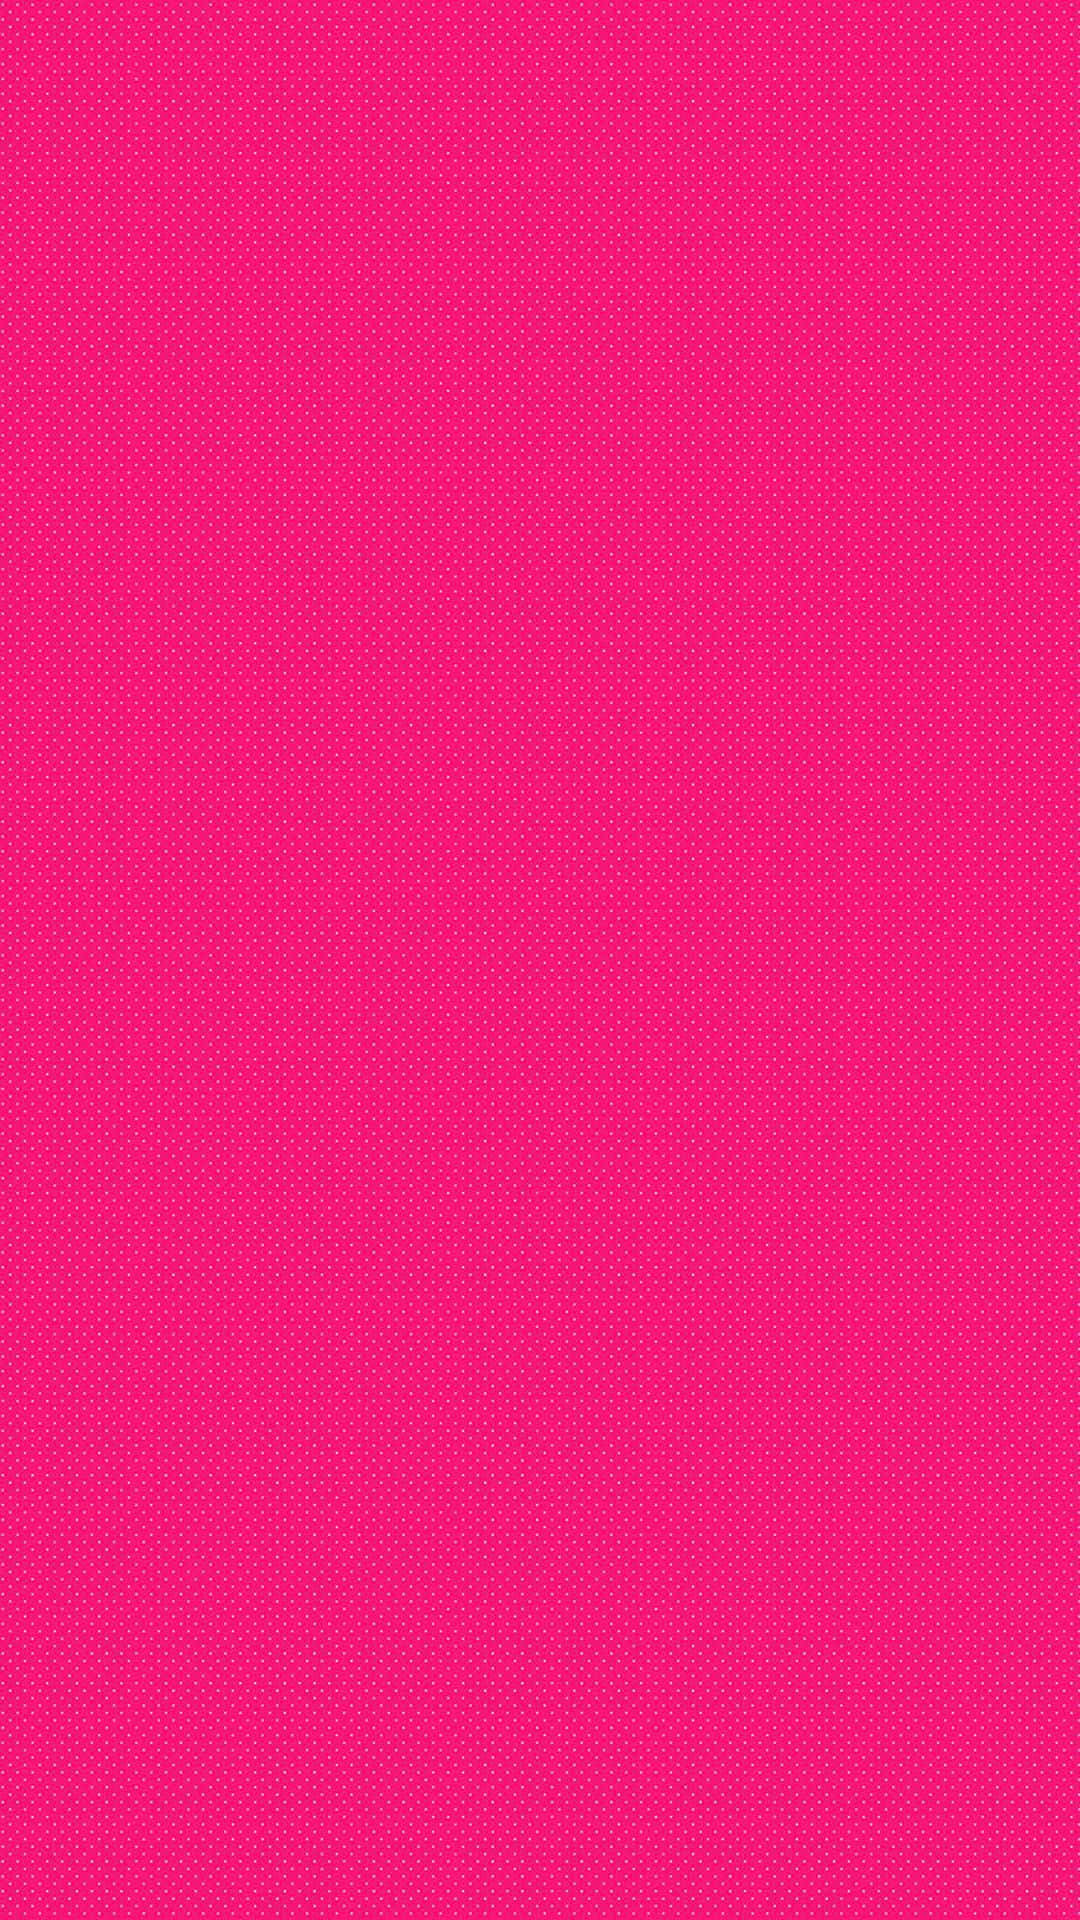 Sfondoper Iphone Di Colore Rosa Acceso Uniforme Sfondo